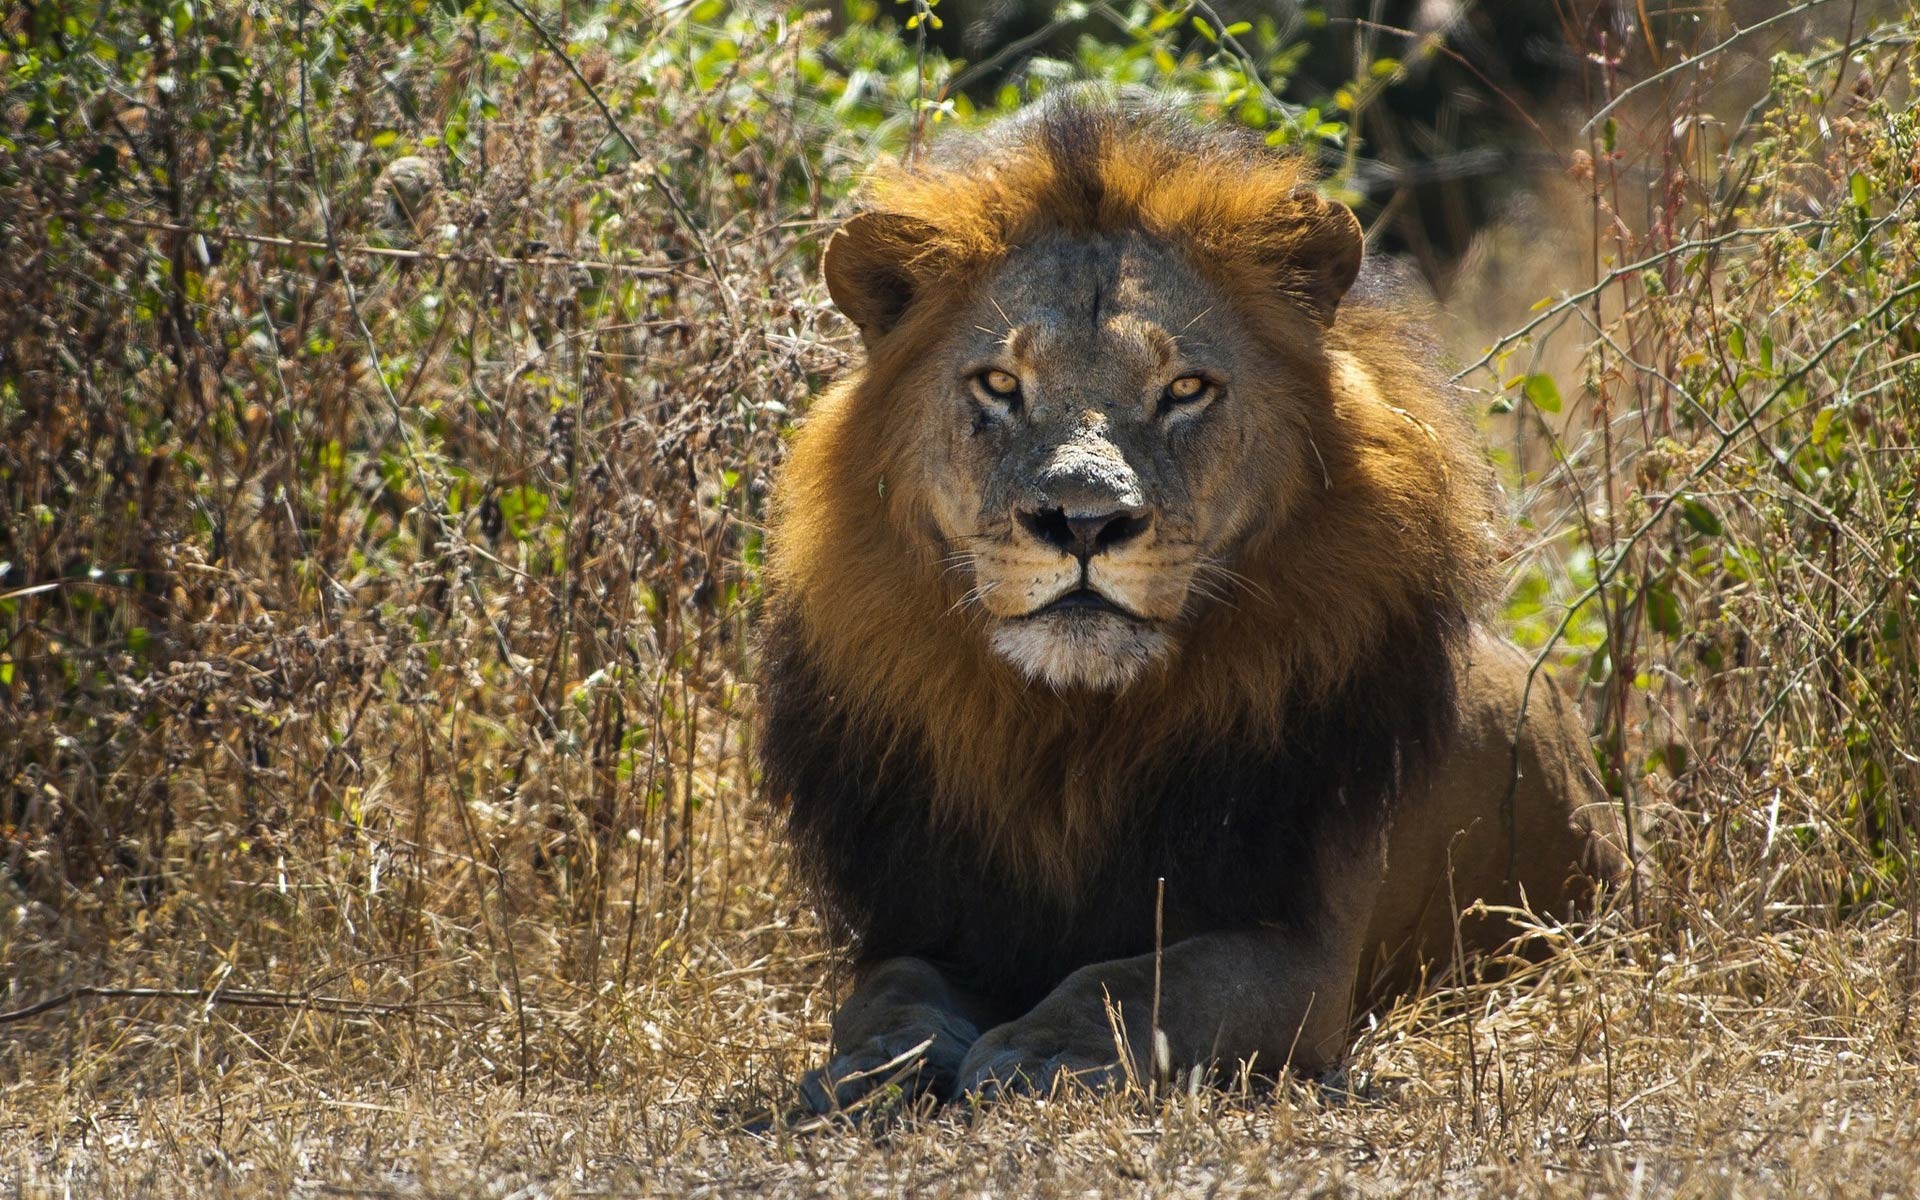 leone arrabbiato hd wallpaper,leone,natura,animale terrestre,leone masai,felidae